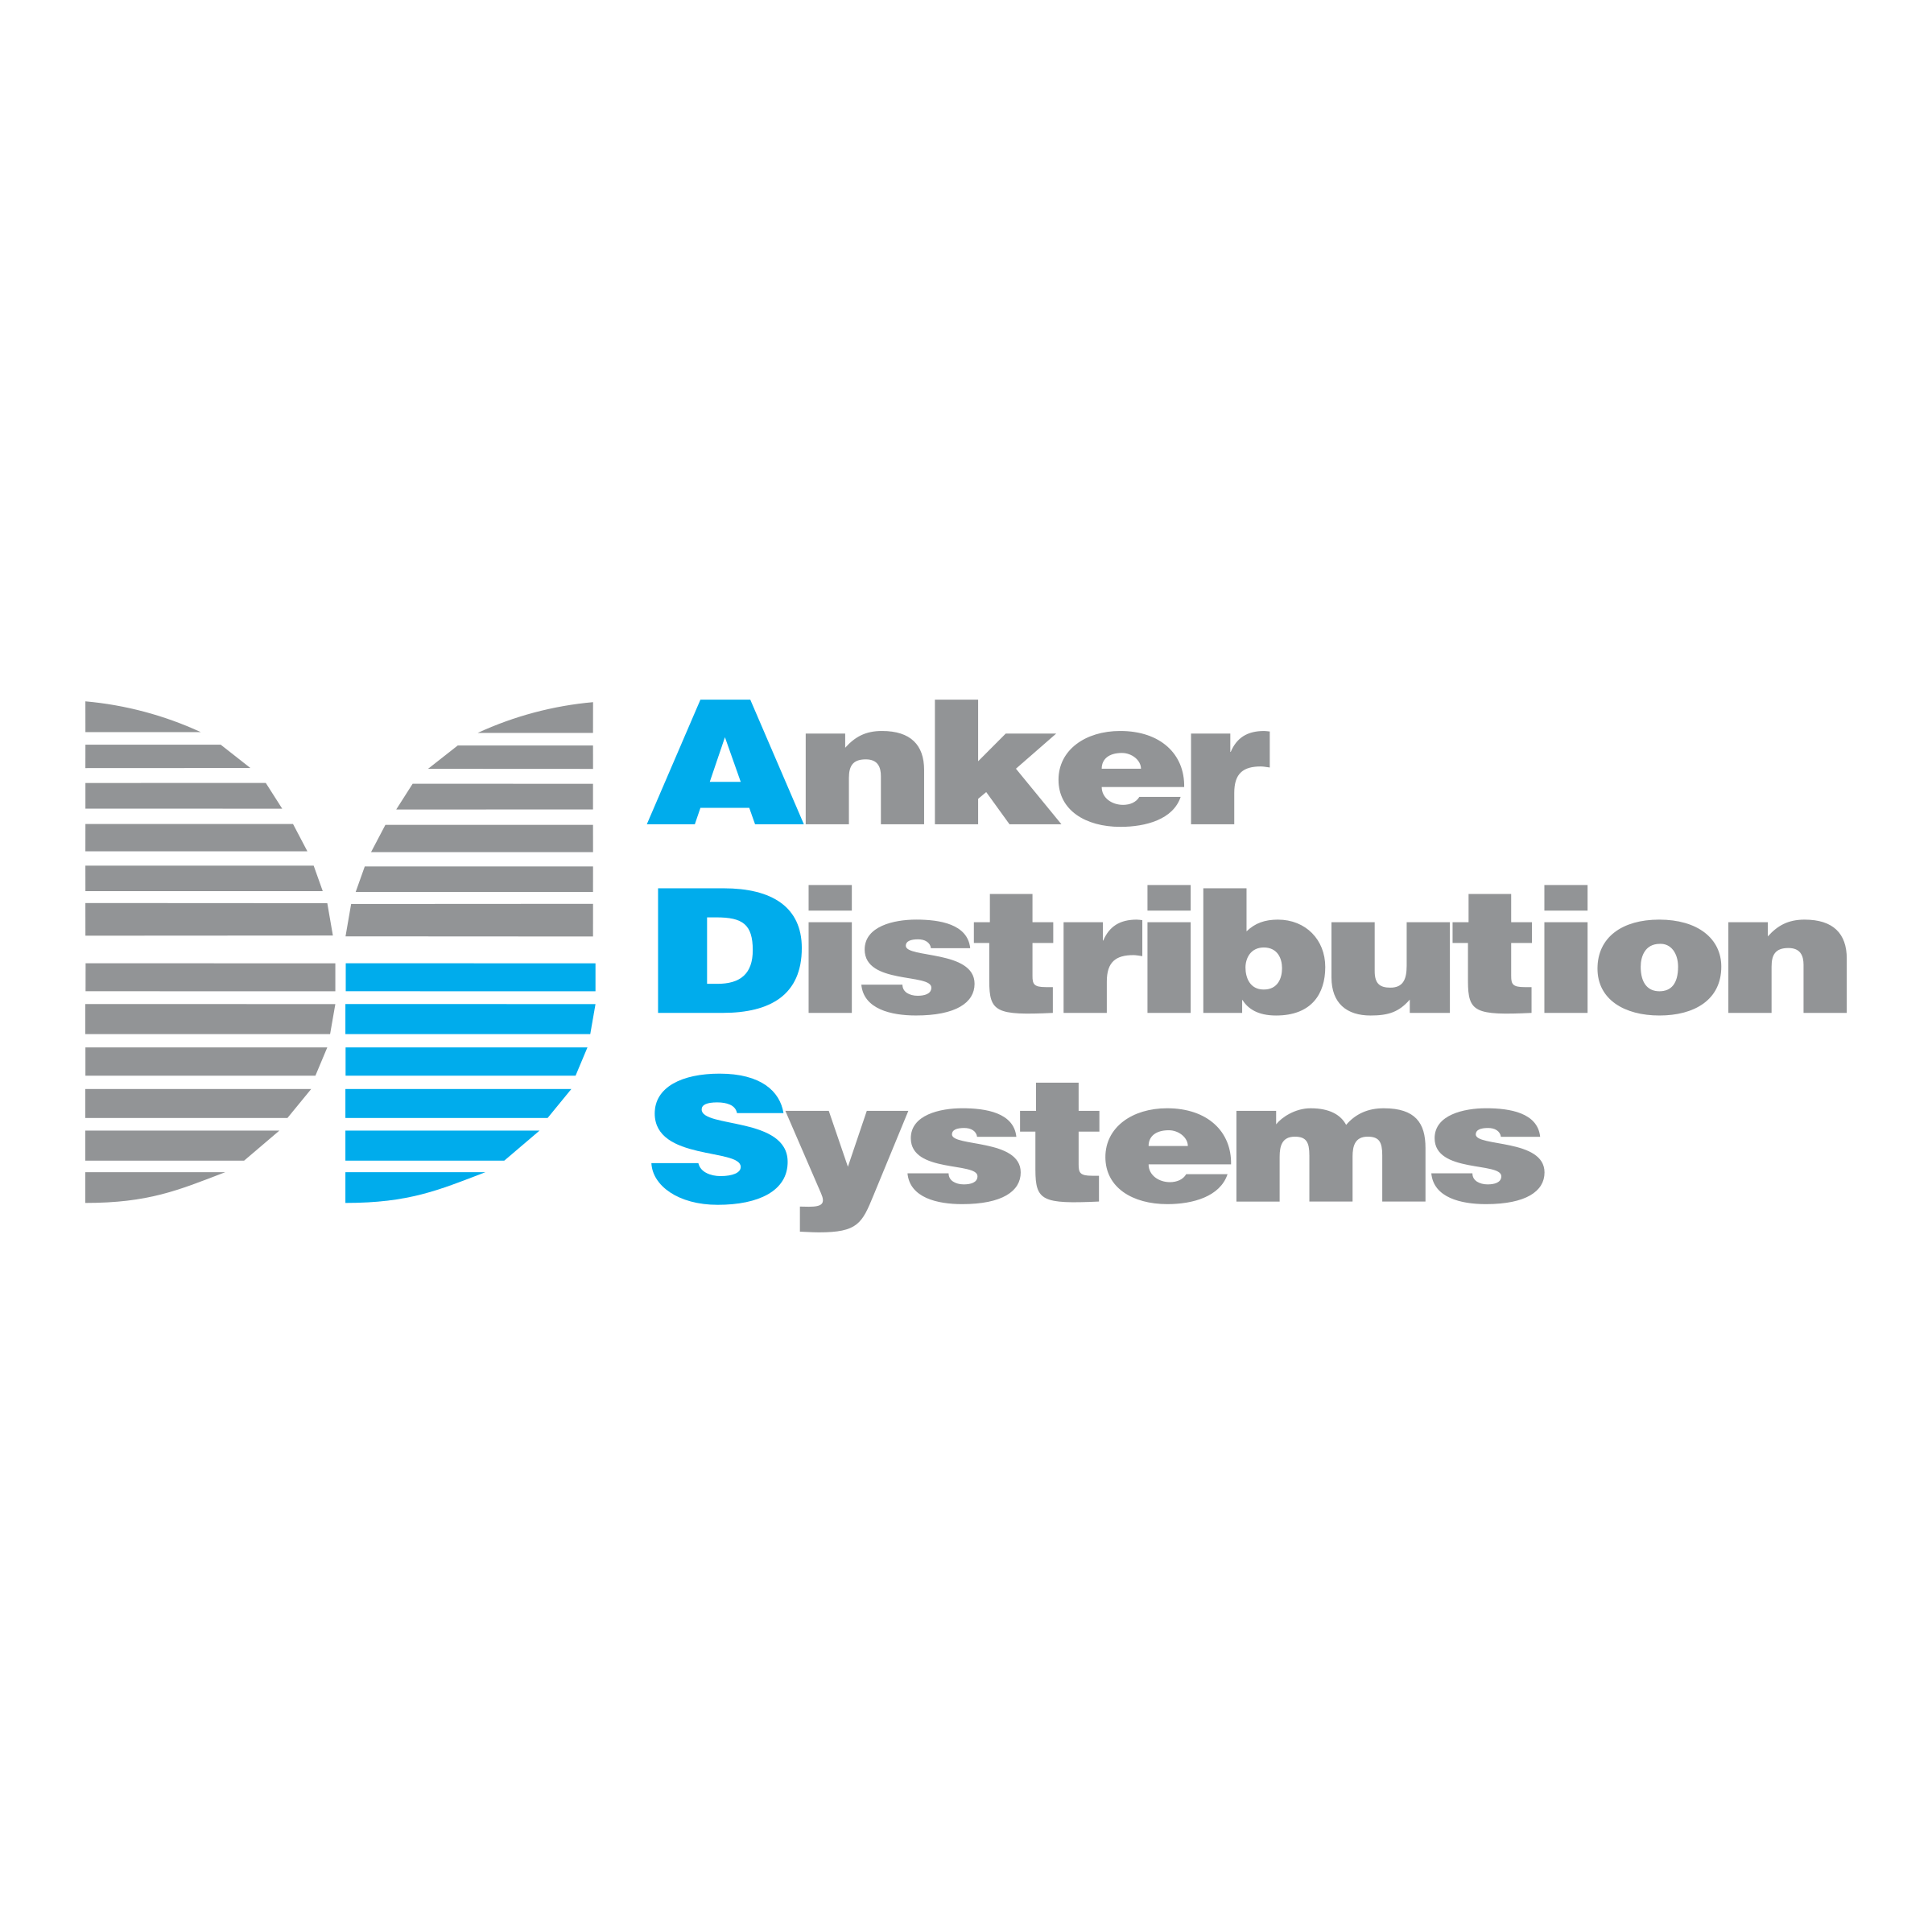 Anker Logo - Anker Distribution Systems Logo PNG Transparent & SVG Vector